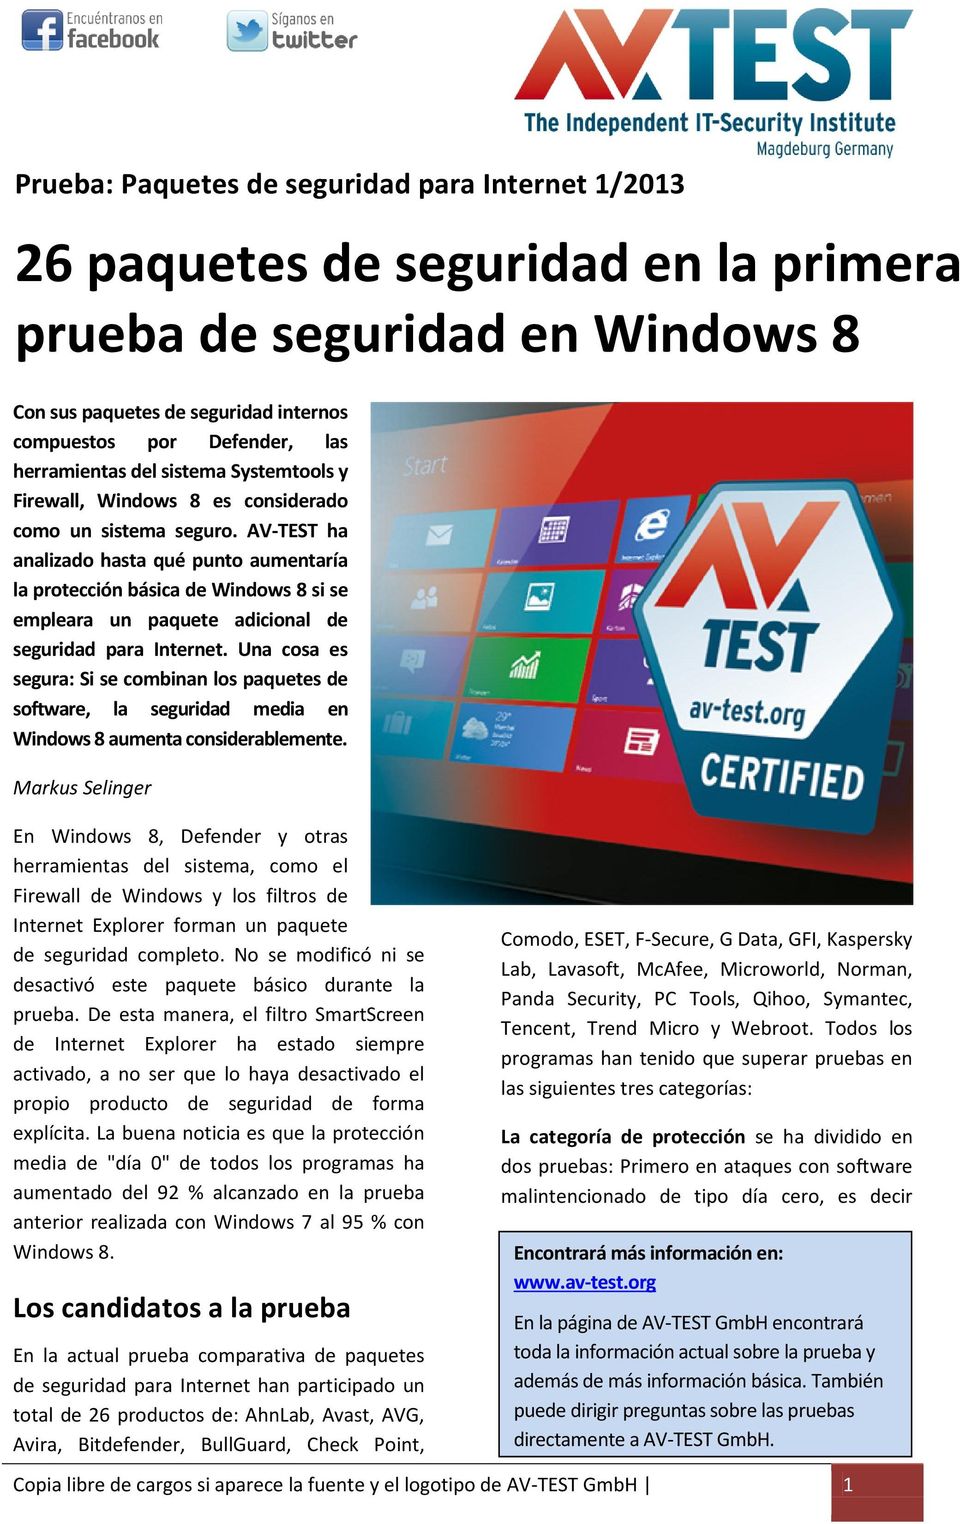 AV-TEST ha analizado hasta qué punto aumentaría la protección básica de Windows 8 si se empleara un paquete adicional de seguridad para Internet.